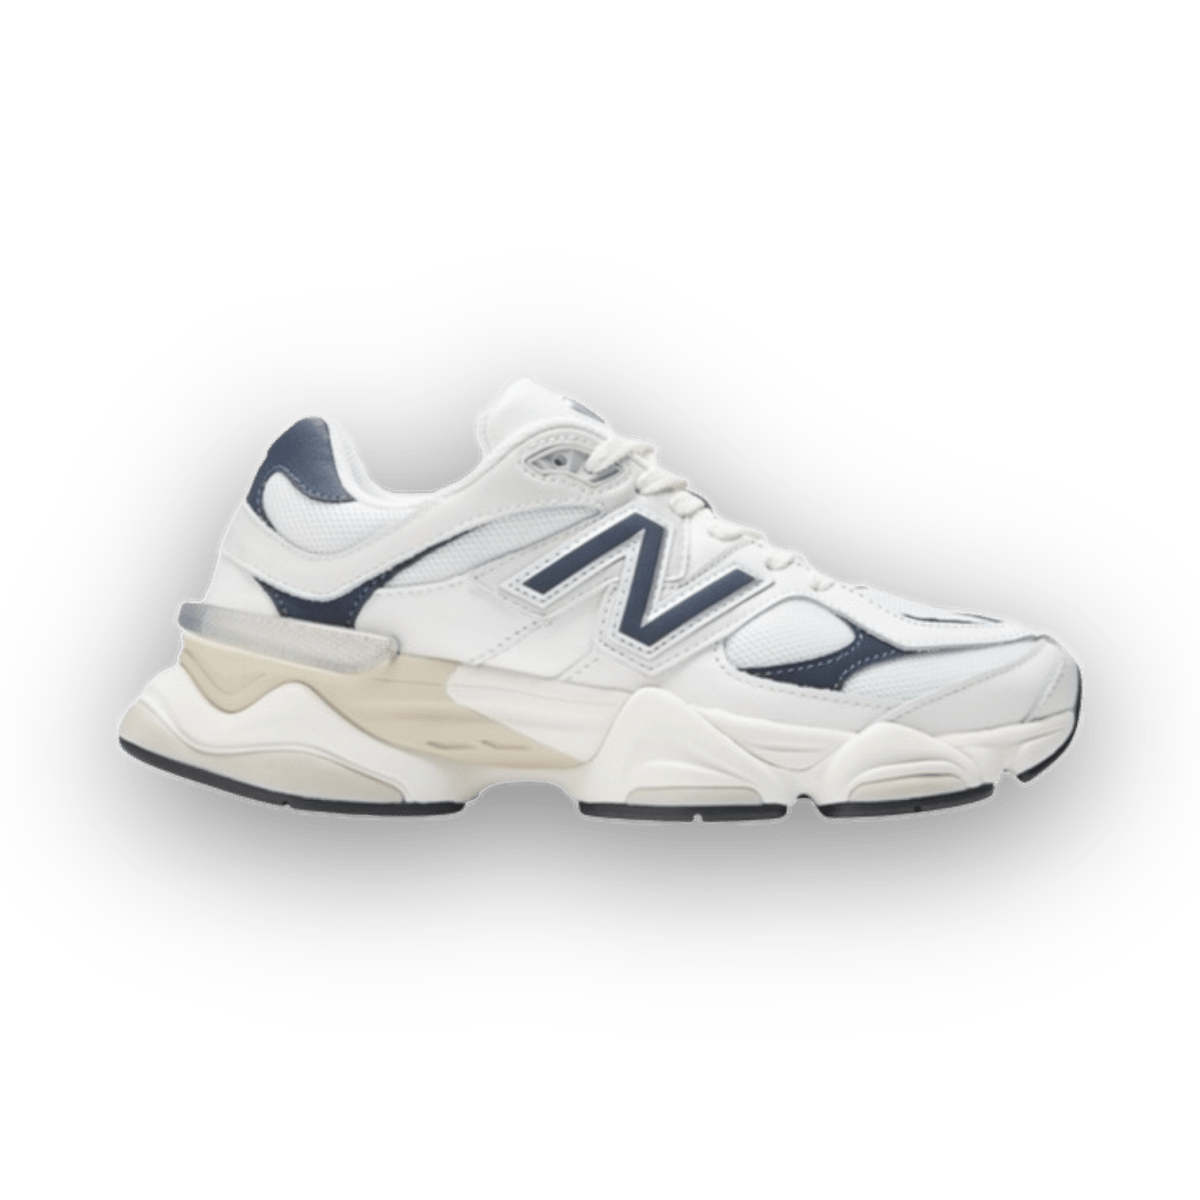 New Balance 9060 Navy - Low Sneaker - Jawns on Fire Sneakers & Streetwear